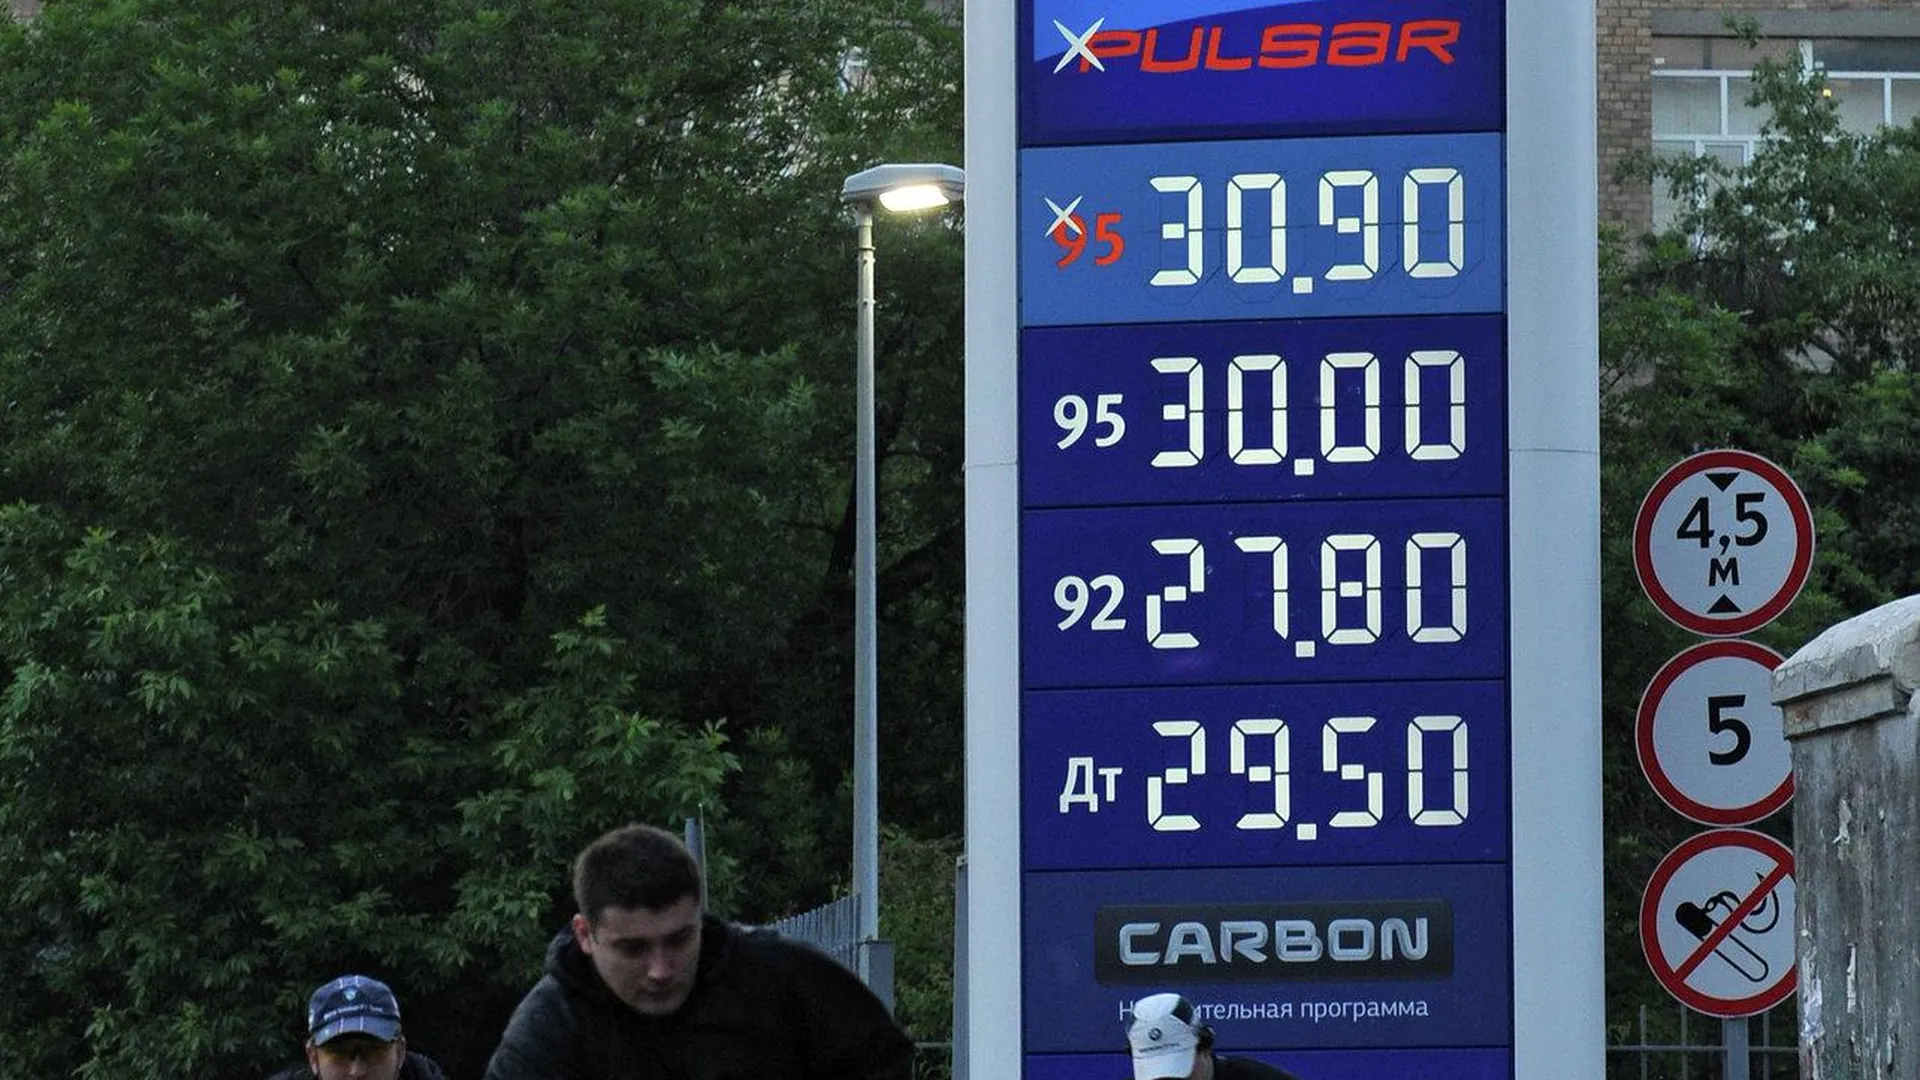 Новый нефтепровод может «удержать» цены на бензин — Шойгу